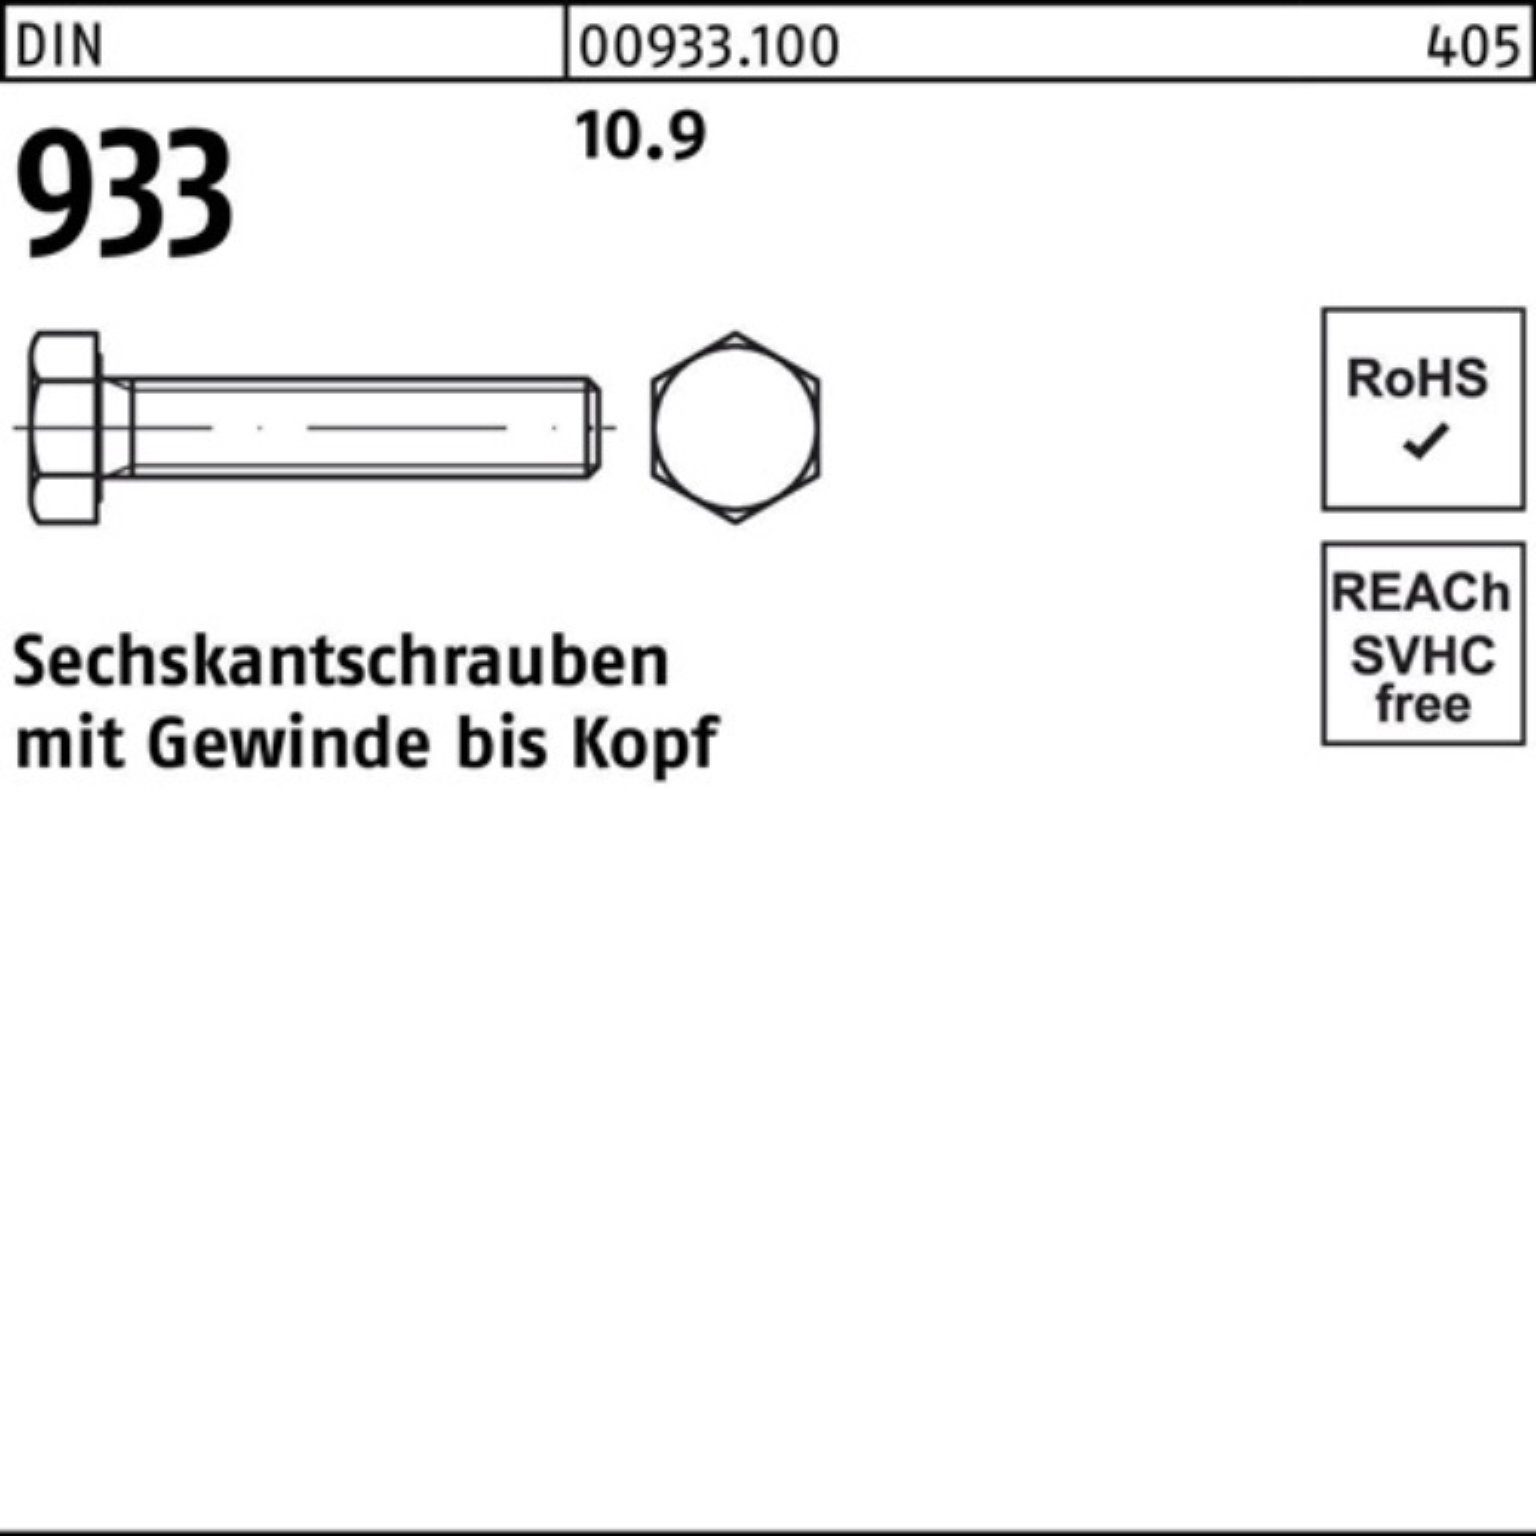 Reyher Sechskantschraube VG DIN 933 Sechskantschraube DIN Pack Stück 1 M36x 933 10.9 190 100er